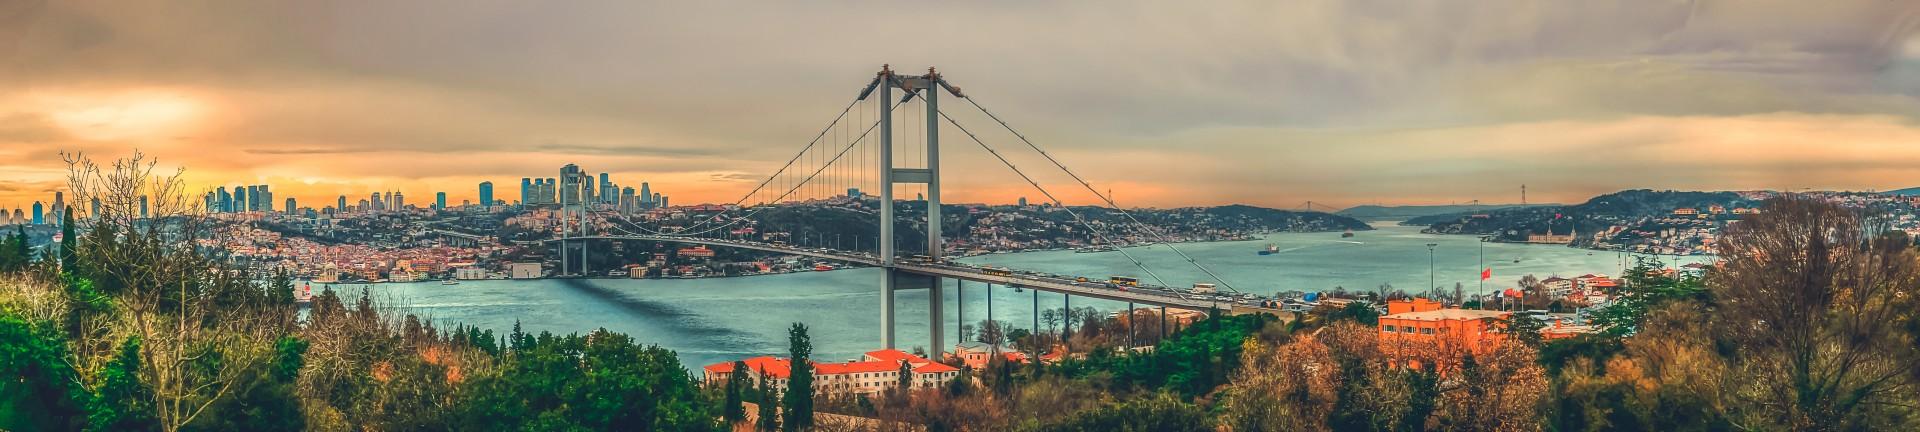 Fatih Sultan Mehmet Bridge Instanbul